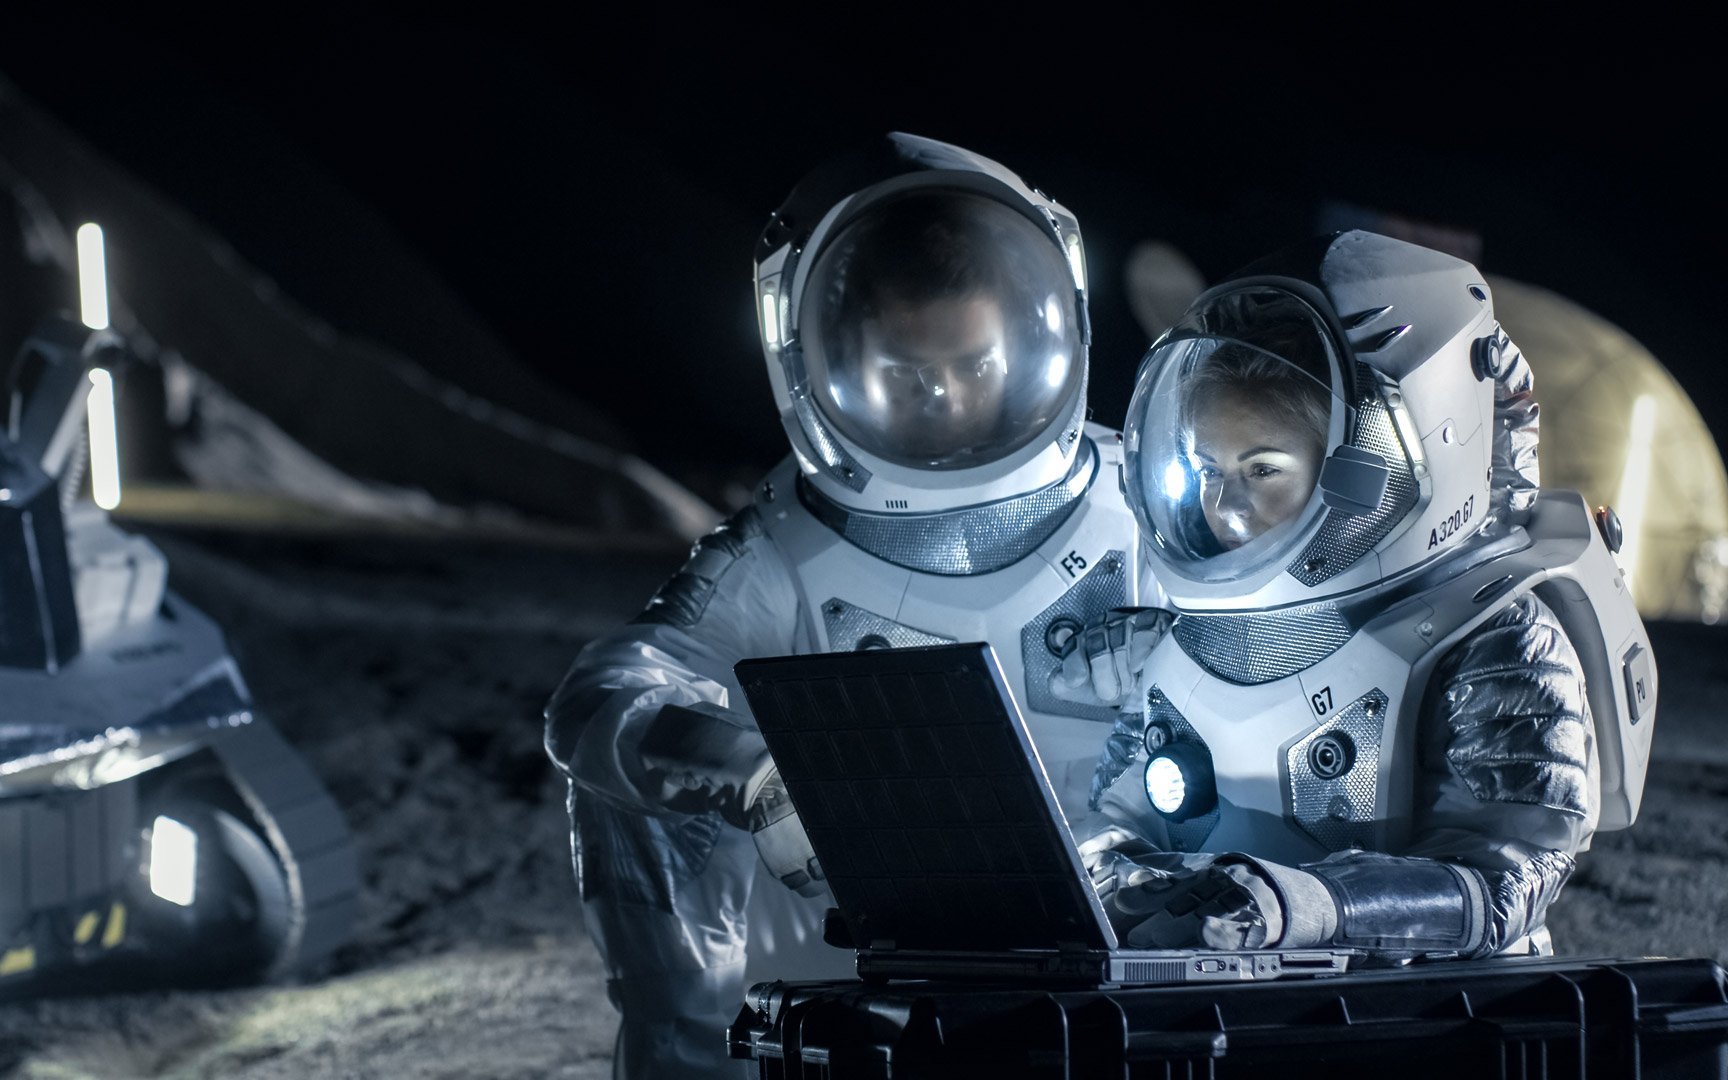 Zwei Astronauten, die Weltraumanzüge tragen, arbeiten auf einem Laptop, erforschen neu entdeckte Planeten und senden Signale an die Erde. Raumfahrt, Interstellar Exploration und Kolonialisierung Konzept.